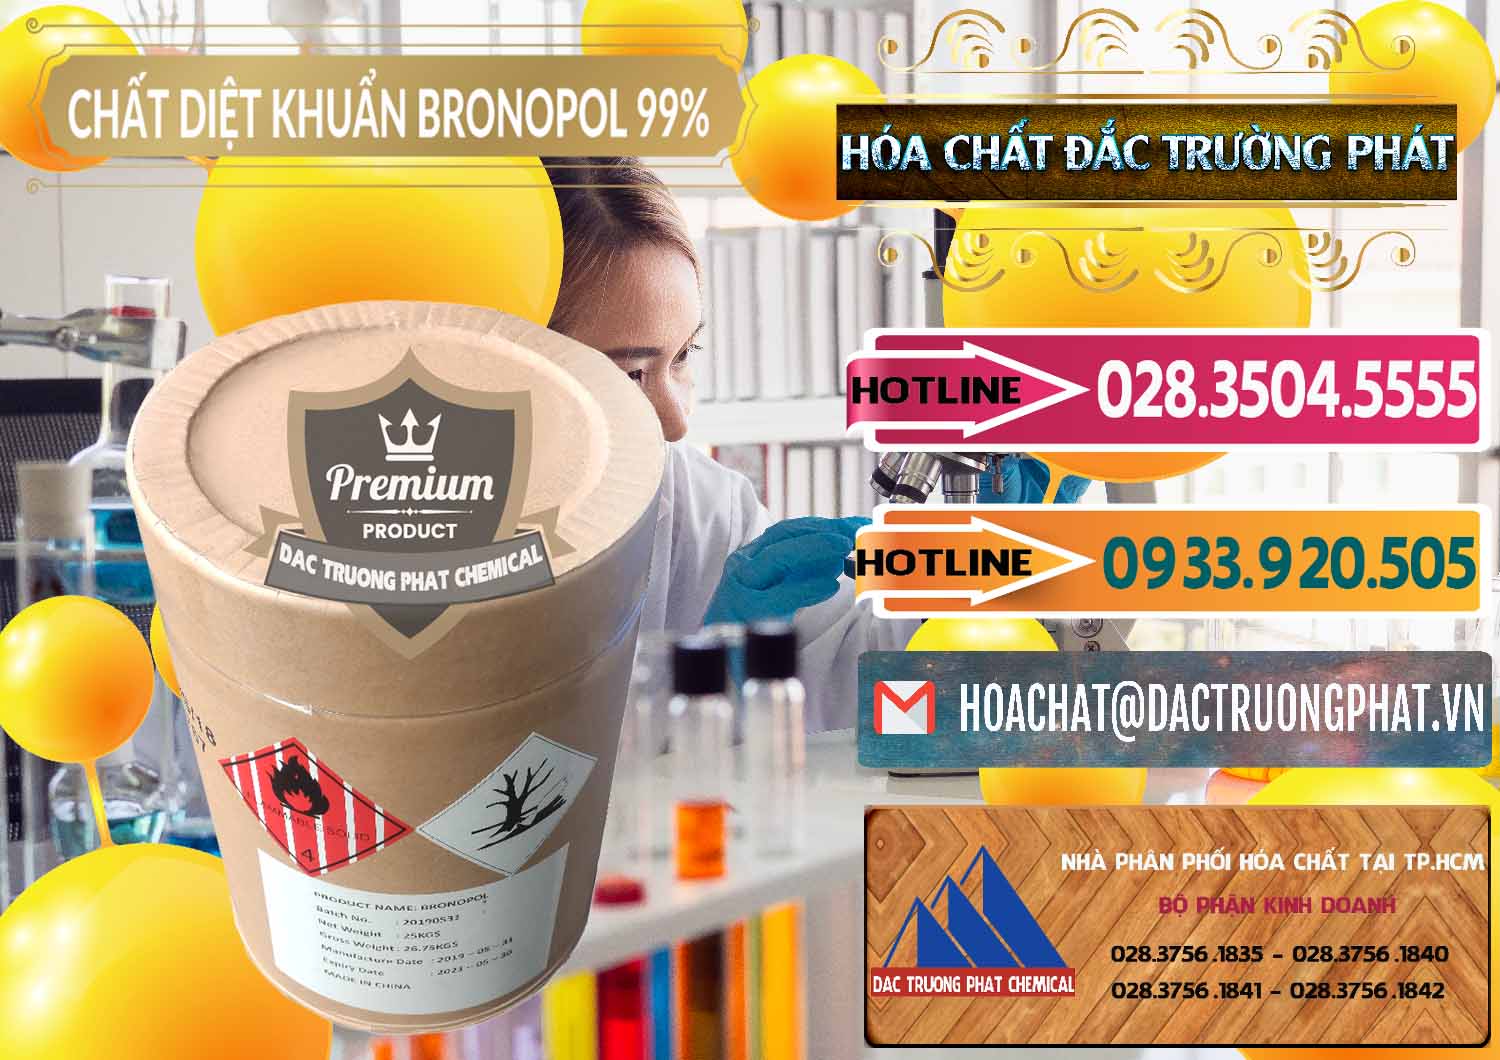 Nơi chuyên phân phối và bán Bronopol - C3H6BrNO4 Trung Quốc China - 0312 - Kinh doanh - phân phối hóa chất tại TP.HCM - dactruongphat.vn